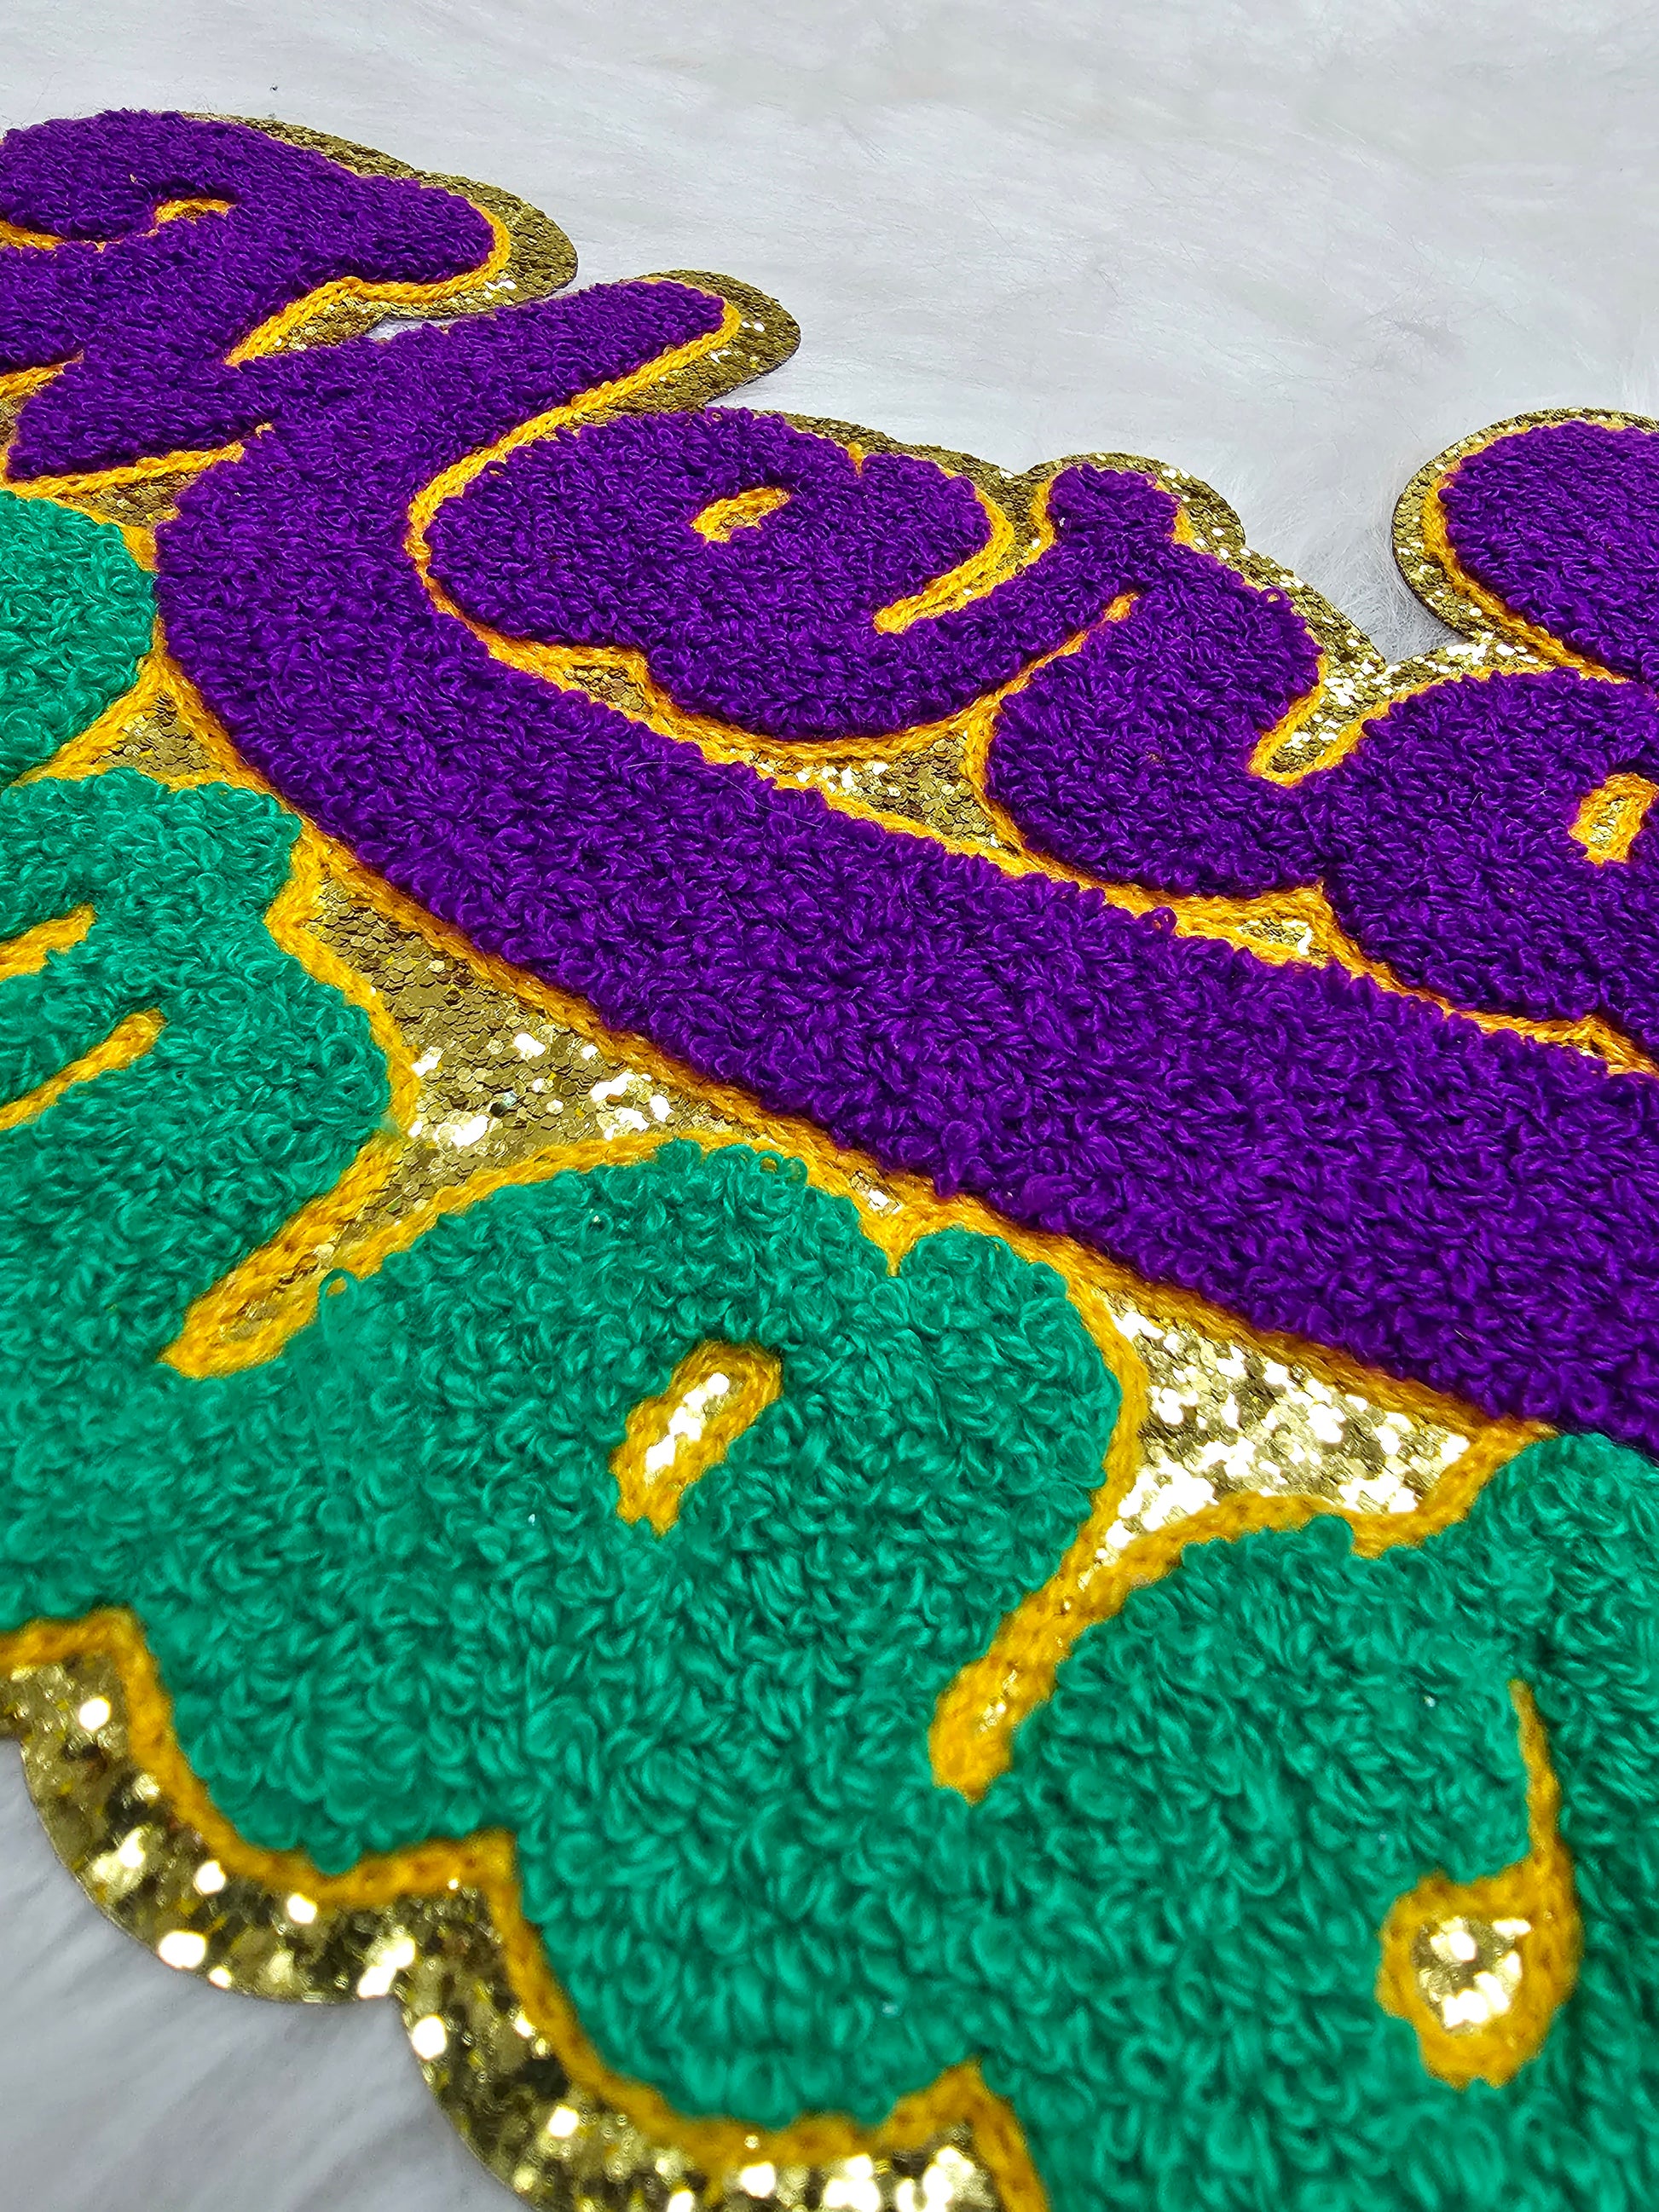 Large Sequin Fleur De Lis Mardi Gras Embroidery Iron On Patch